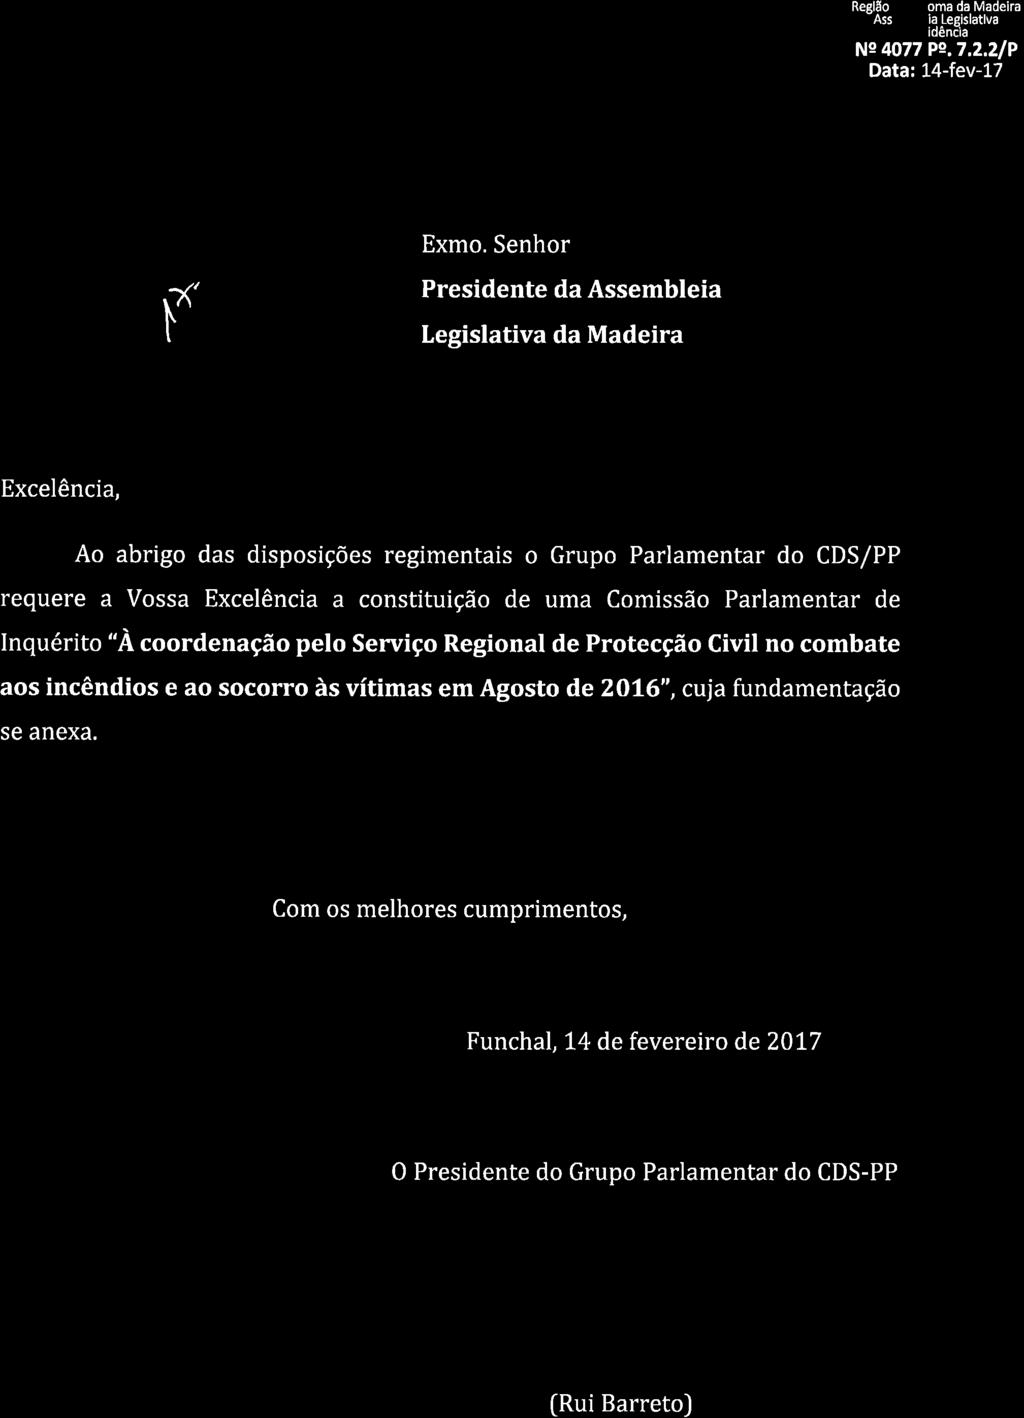 Reslão Autónoma da Madeira -Assembleia Les slâtlva Presidênèia Ne 4077 Pe.7,2,21P Data: 14-fev-17 Grupo Parlamentar \> q,/ o r Exmo.